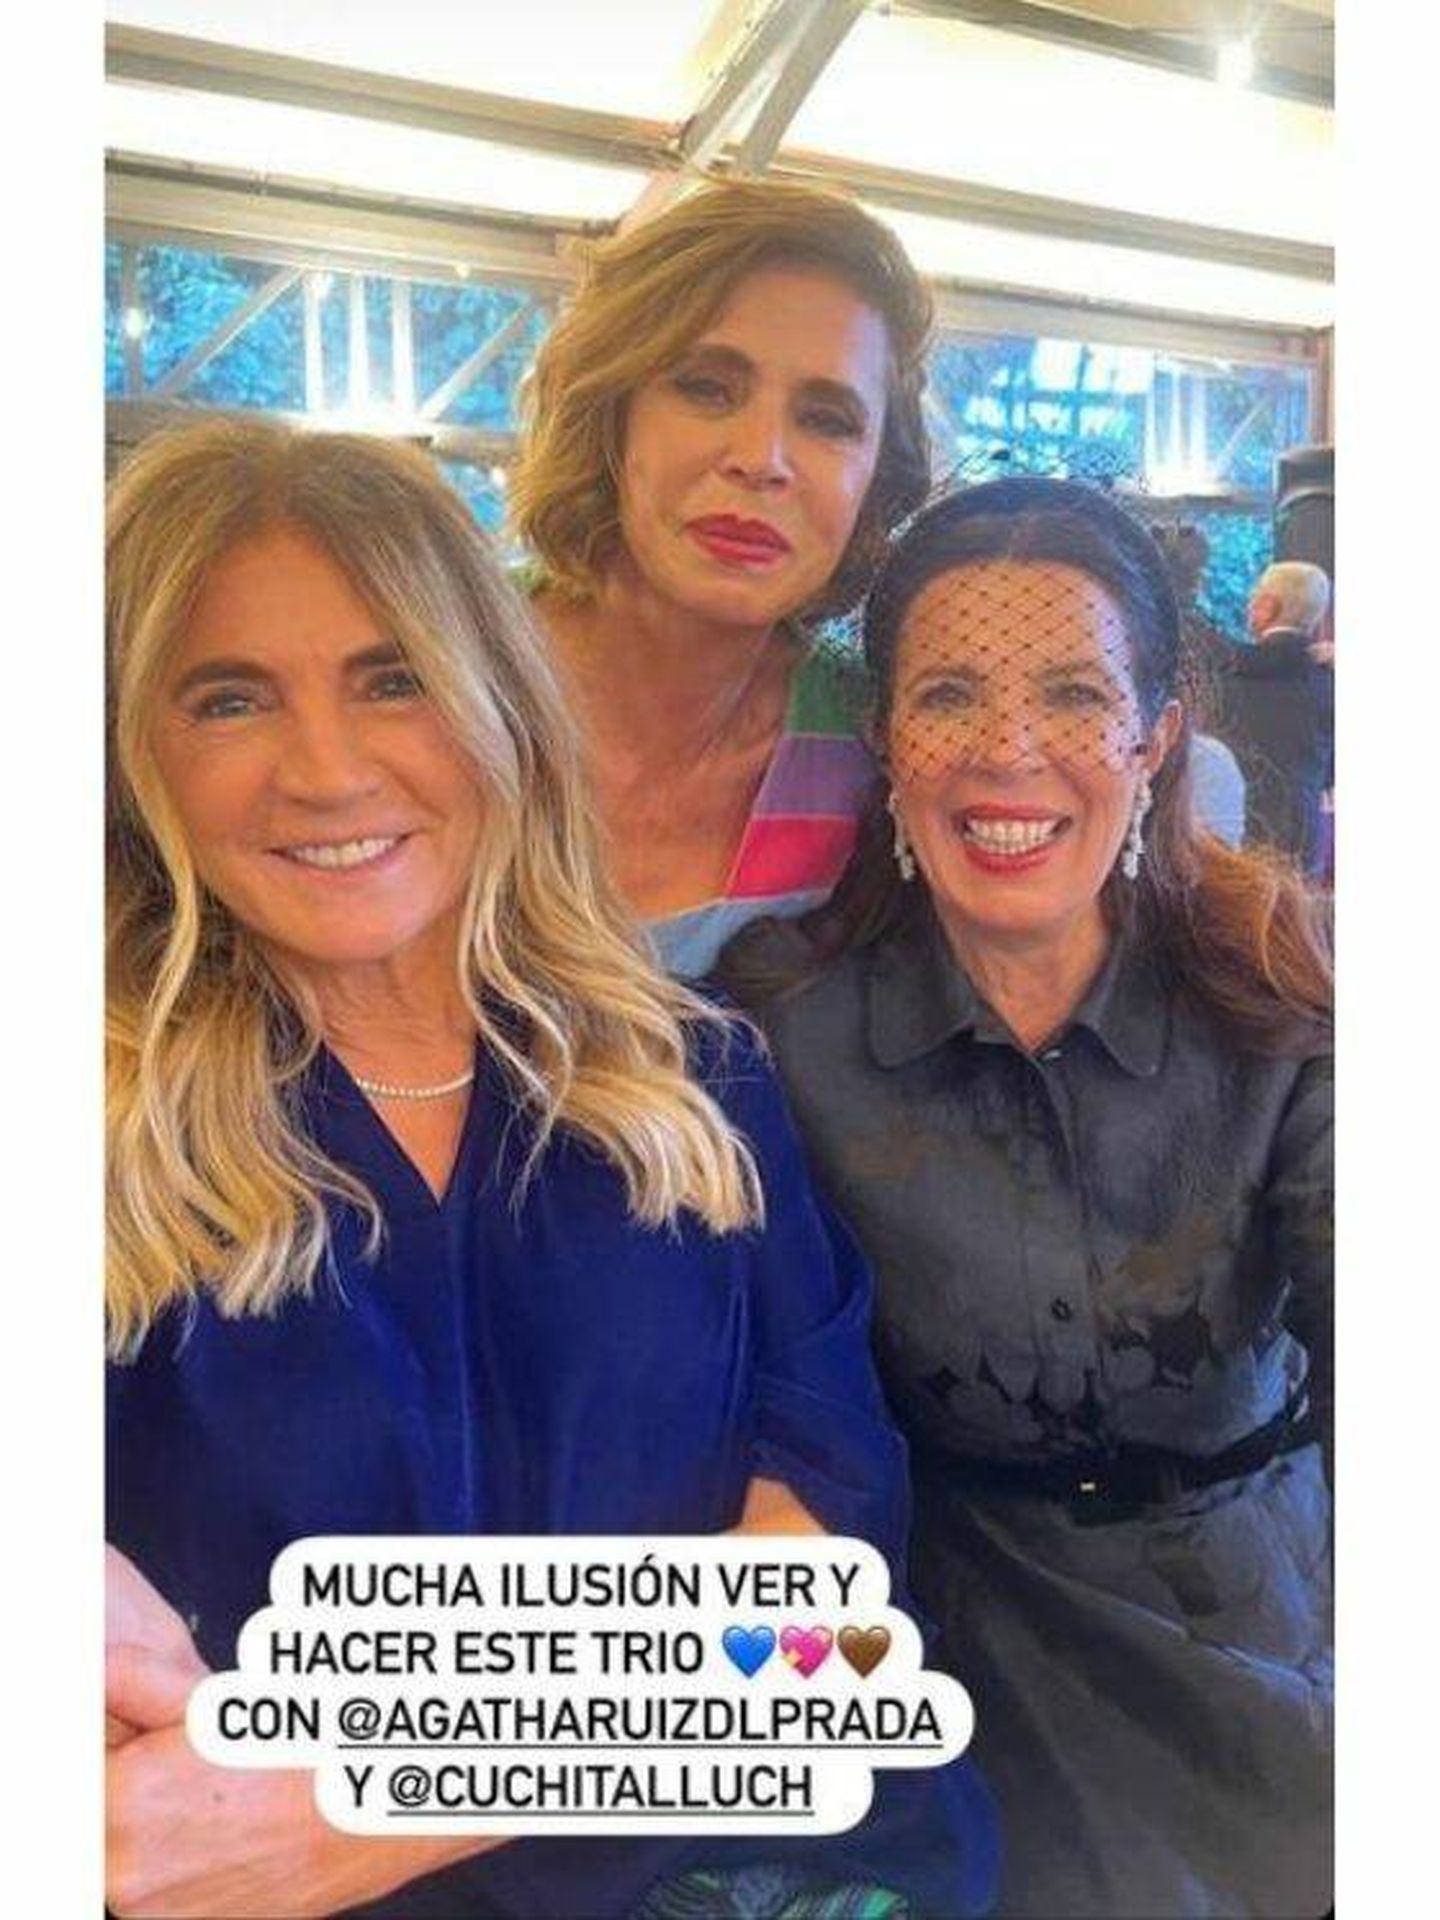 Teresa de la Cierva posa junto a Agatha Ruiz de la Prada y Cuchita Lluc. (Instagram @tdelacierva)